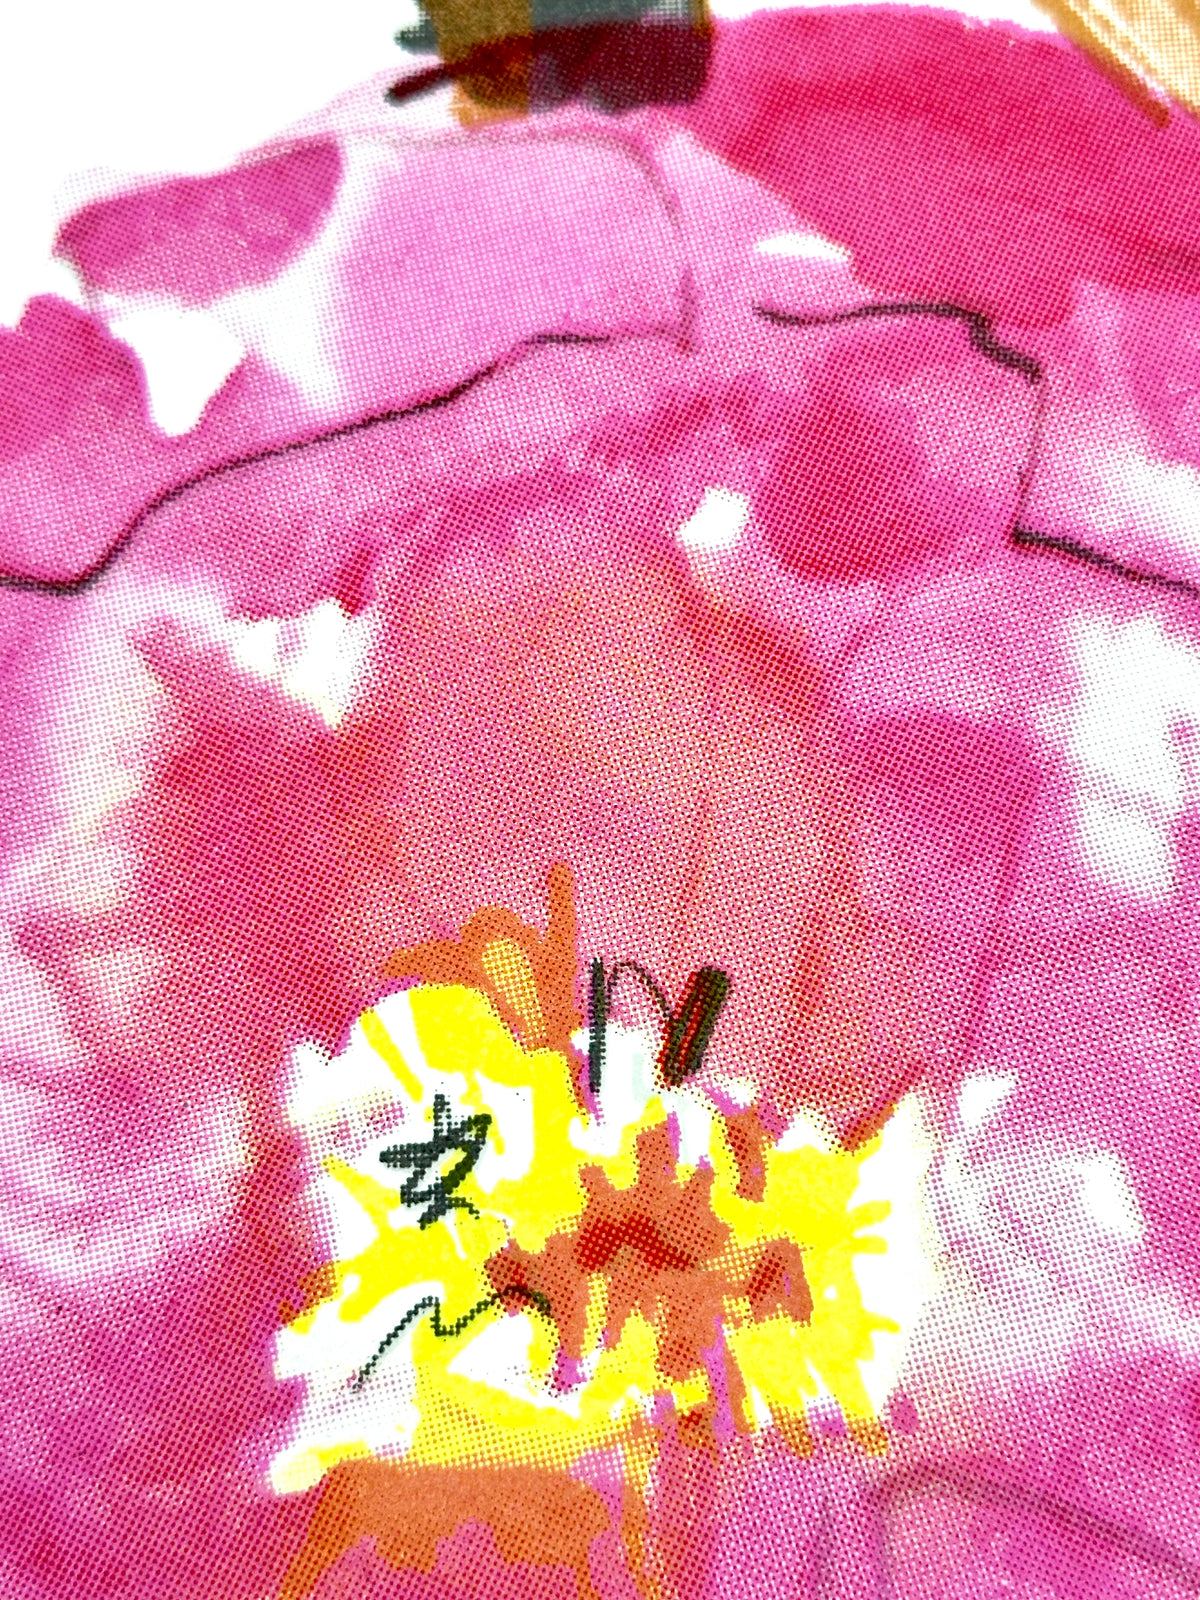 The Blossoming - No. 3 (Special Editon x Persue Hong Kong)